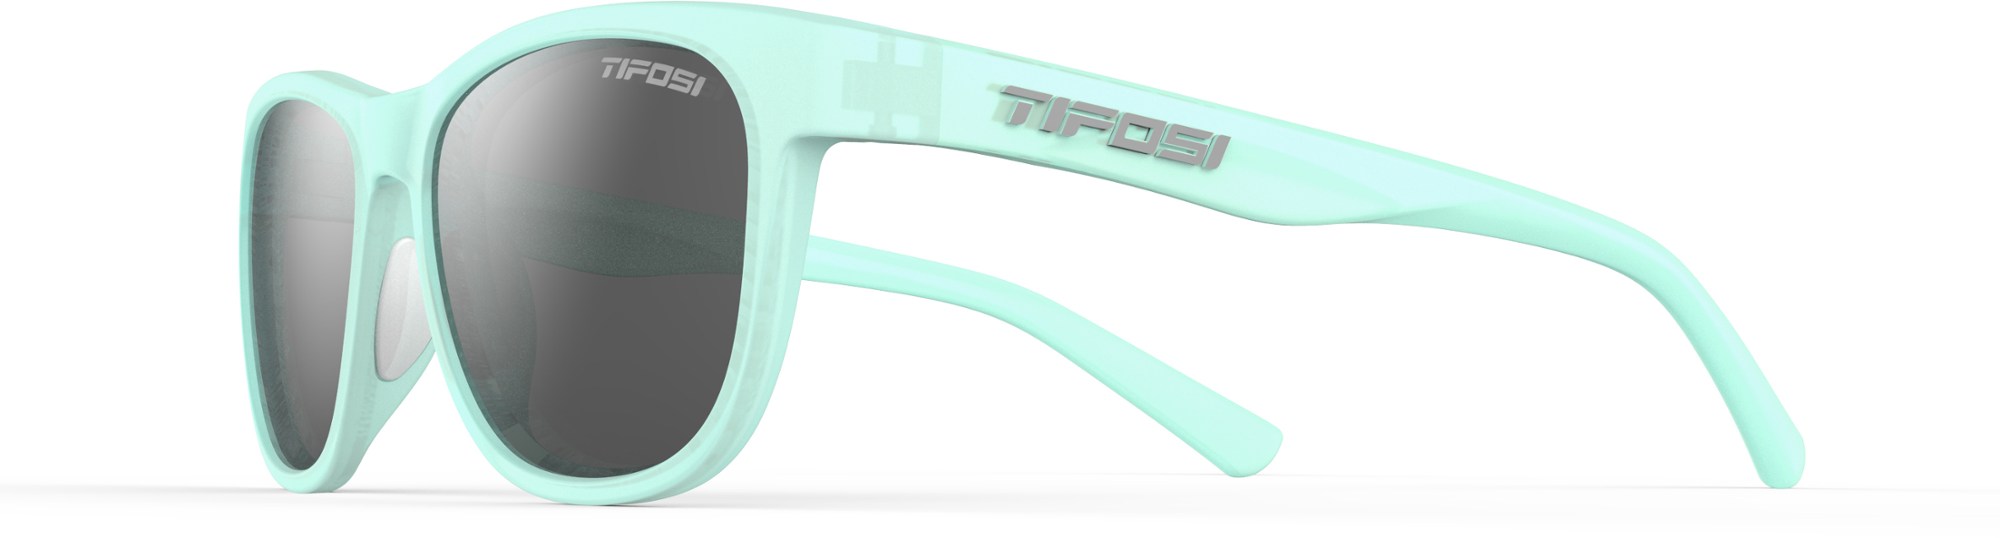 Поляризованные солнцезащитные очки Swank Tifosi, синий фото